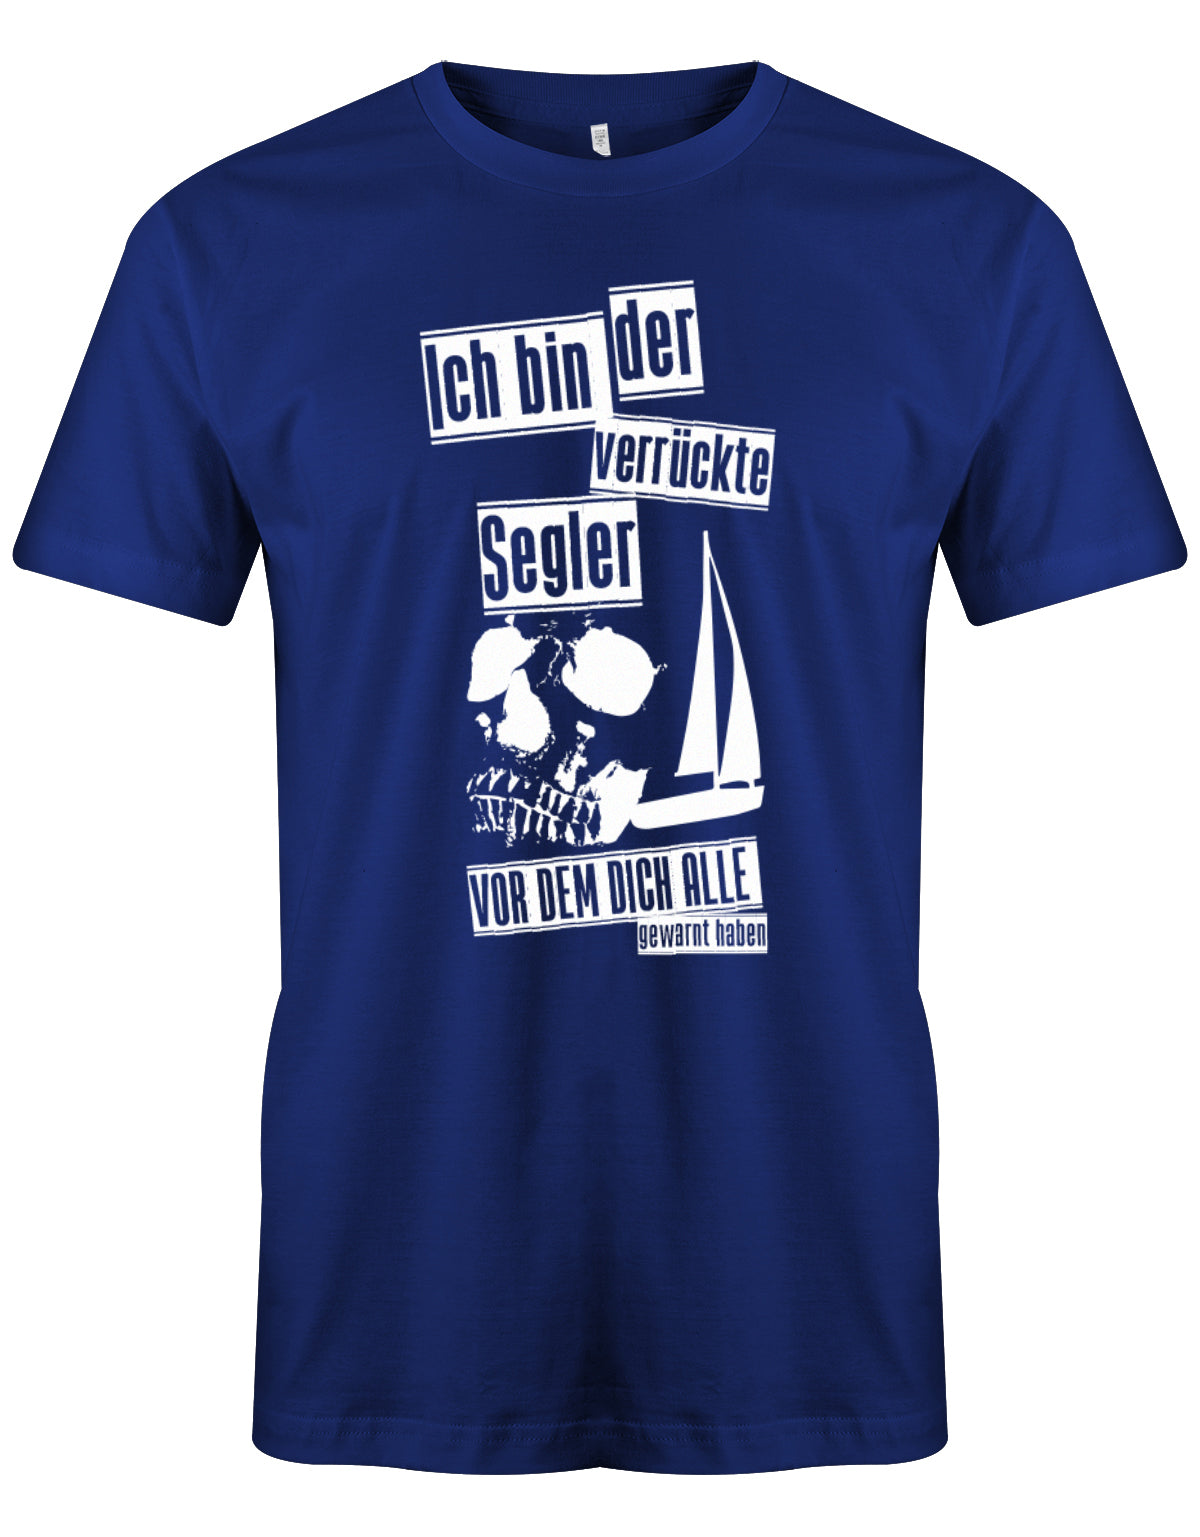 Das Segler t-shirt bedruckt mit "Ich bin der verrückte Segler vor dem dich alle gewarnt haben". Royalblau